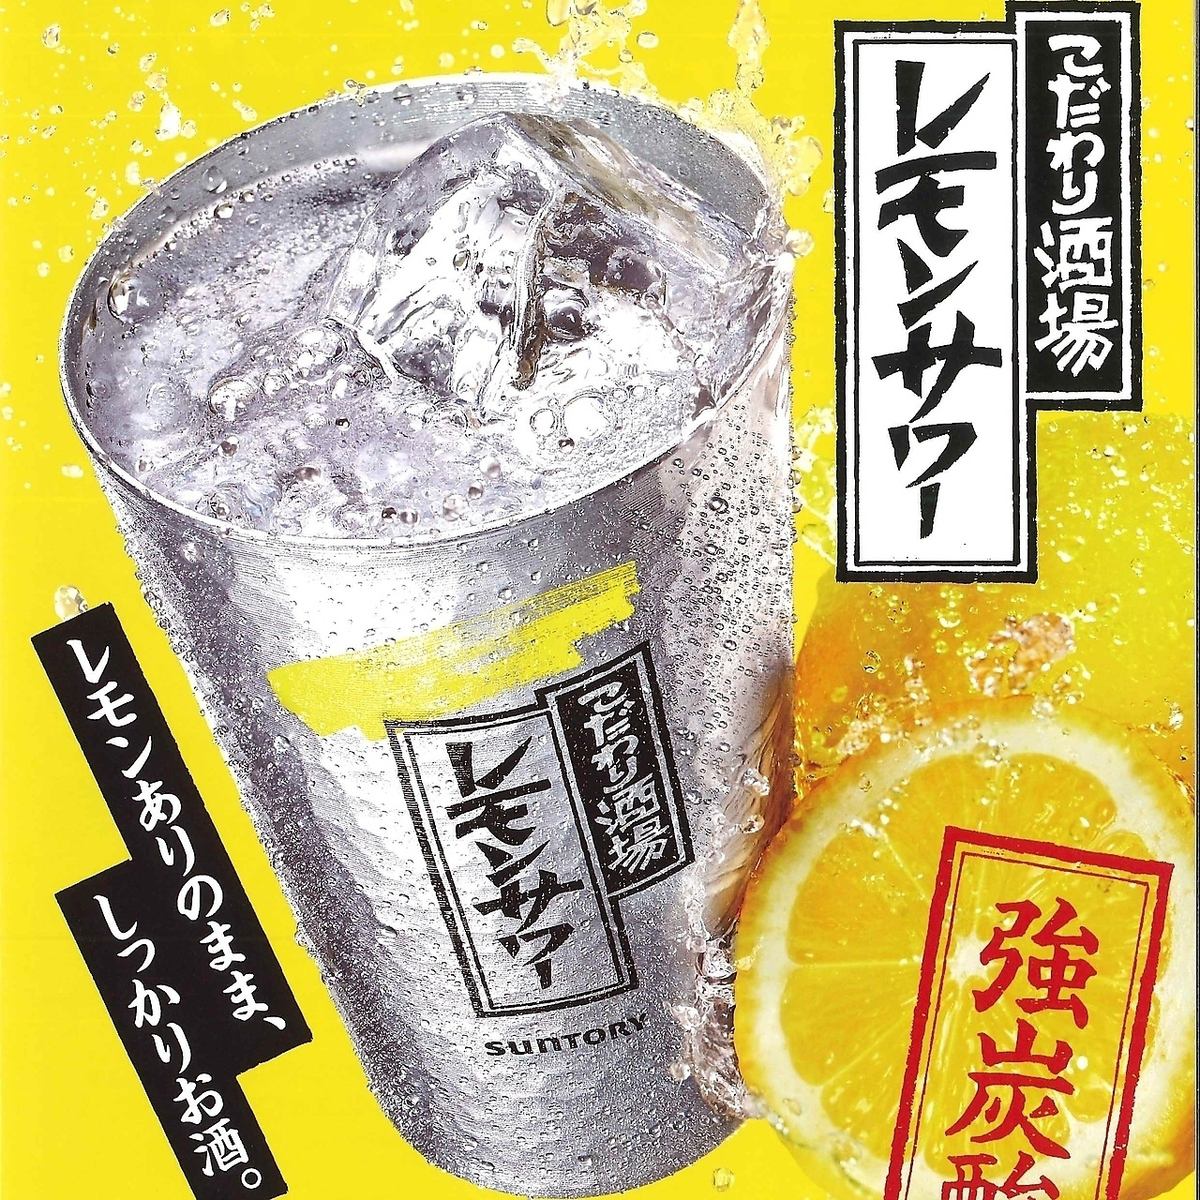 조건 술집의 레몬 사워가 몇 잔 마셔도 50 엔!